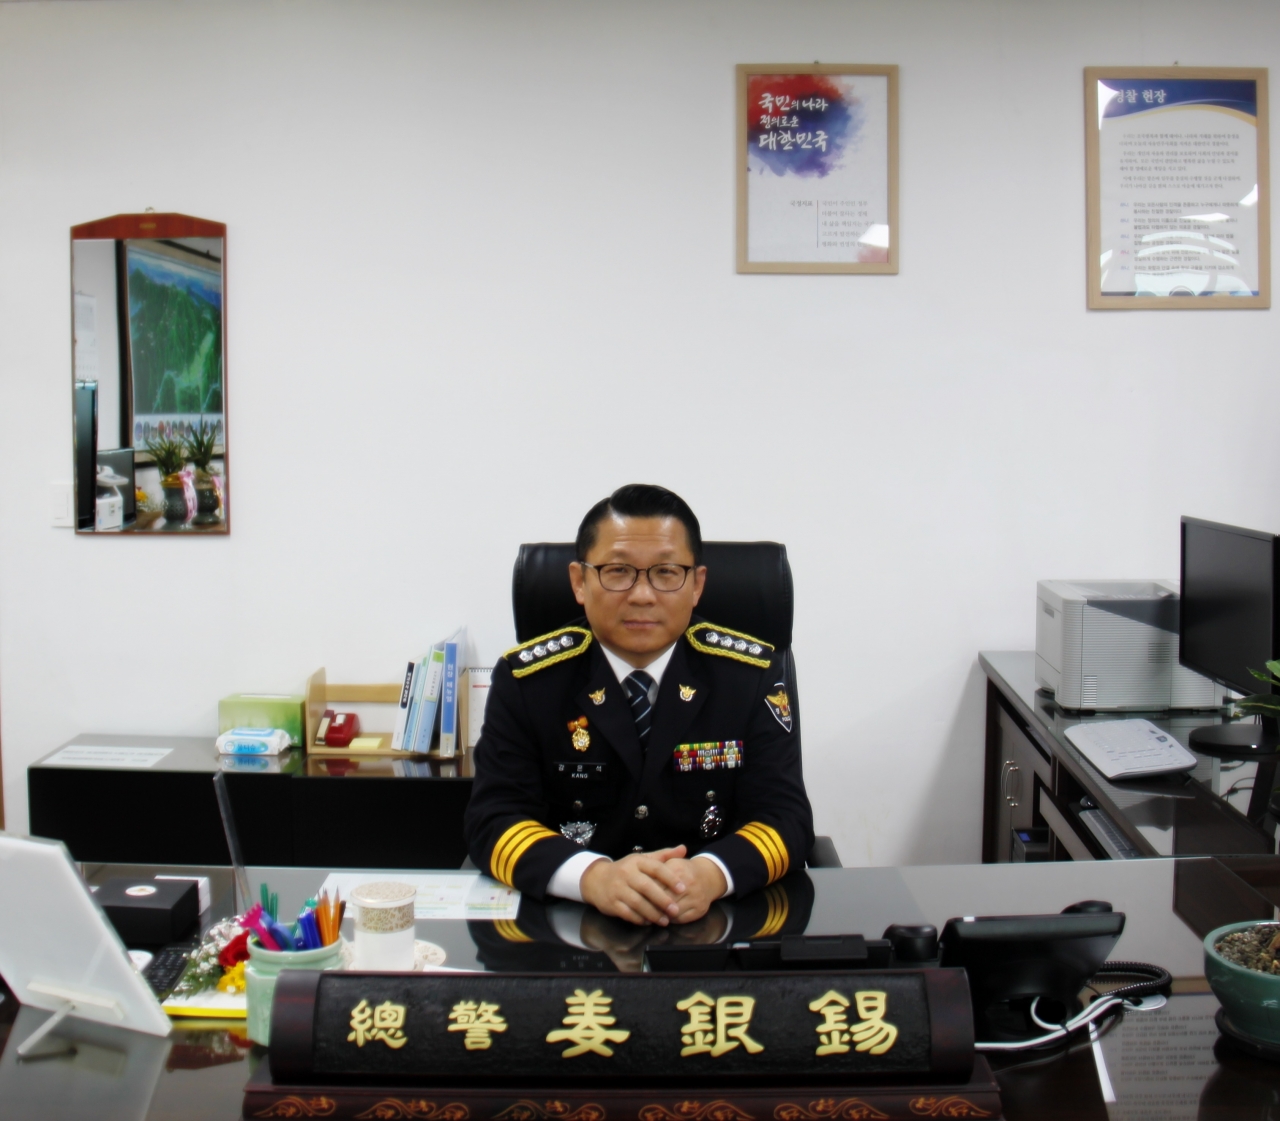 구례경찰서는 지난 20일 강은석(51) 신임 서장이 취임했다고 밝혔다.